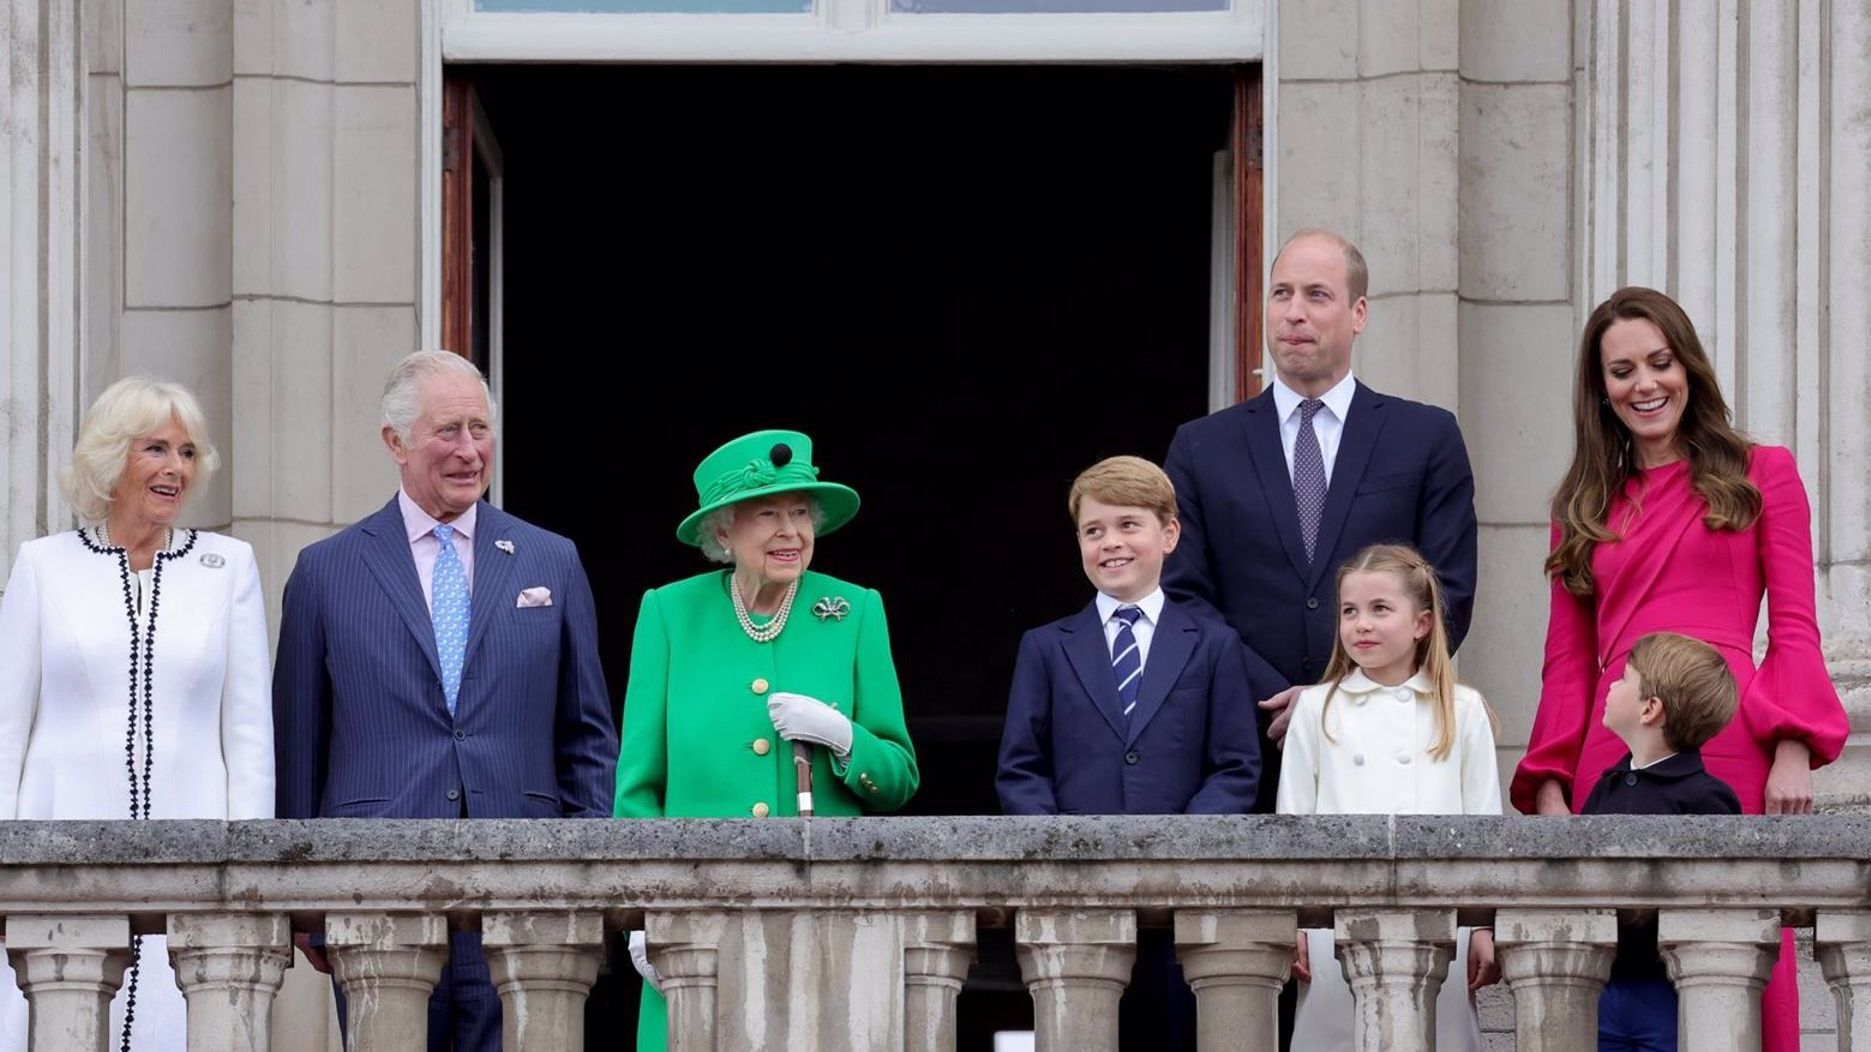 La familia real ha saludado a la multitud congregada frente al Palacio de Buckingham en una breve aparición